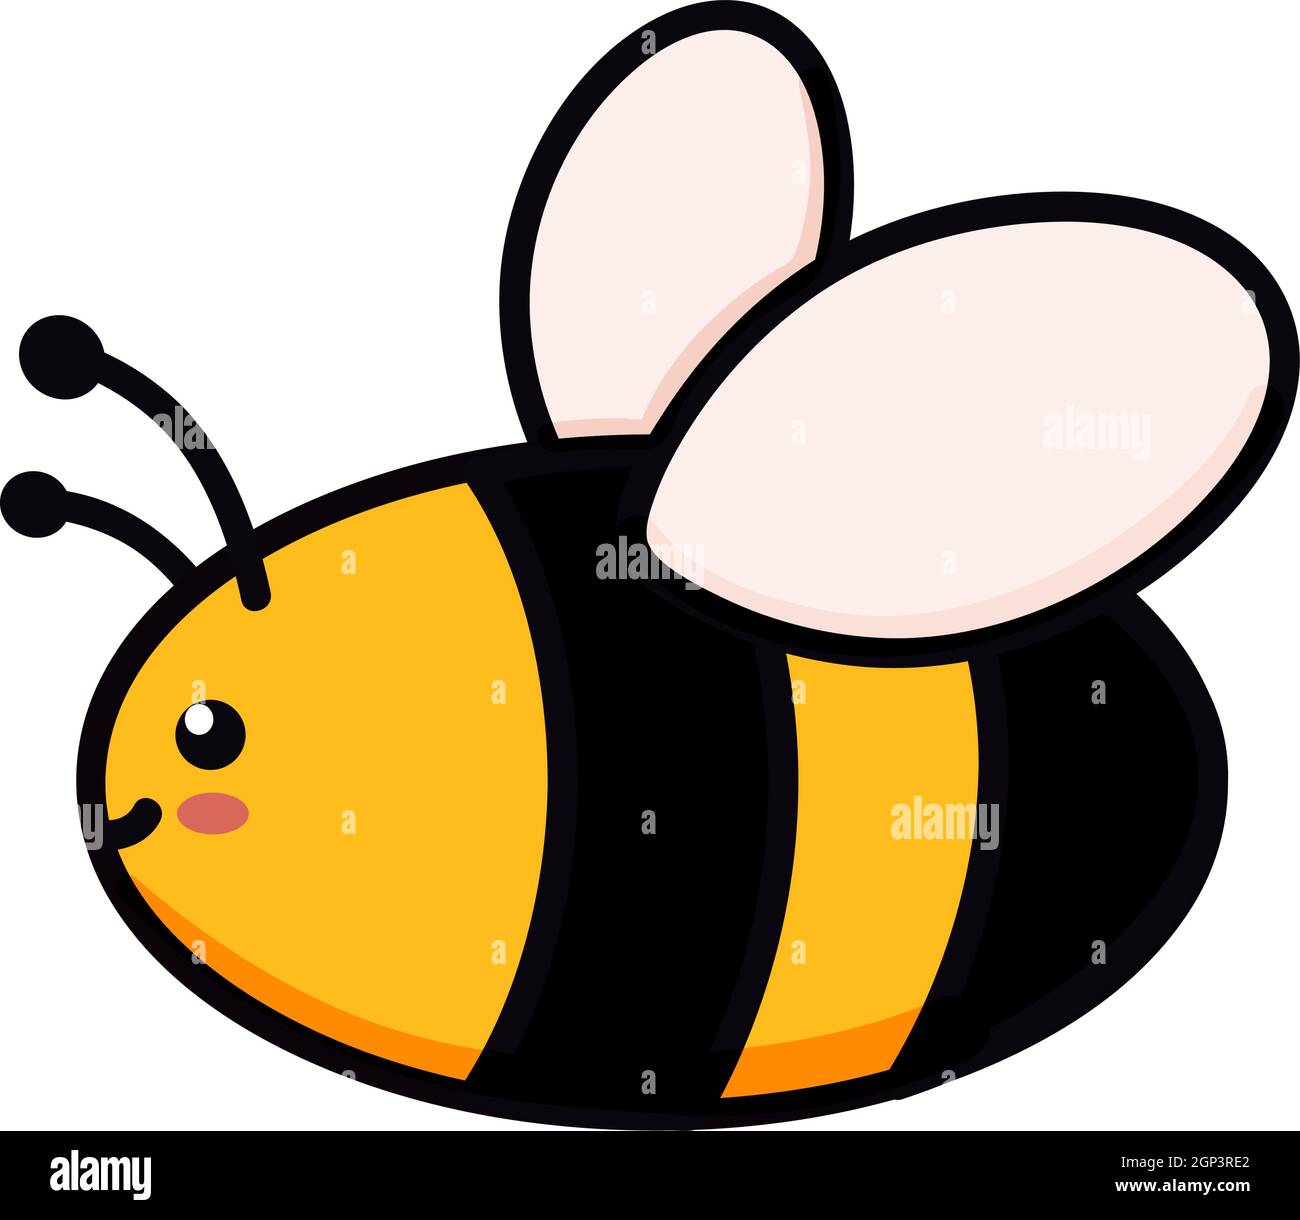 Niedliche Biene Vektor-Illustration im Doodle-Stil. Bunte Kinder Zeichnung für Symbol-und Logo-Design in gelben und schwarzen Farben isoliert auf weißem Hintergrund Stock Vektor